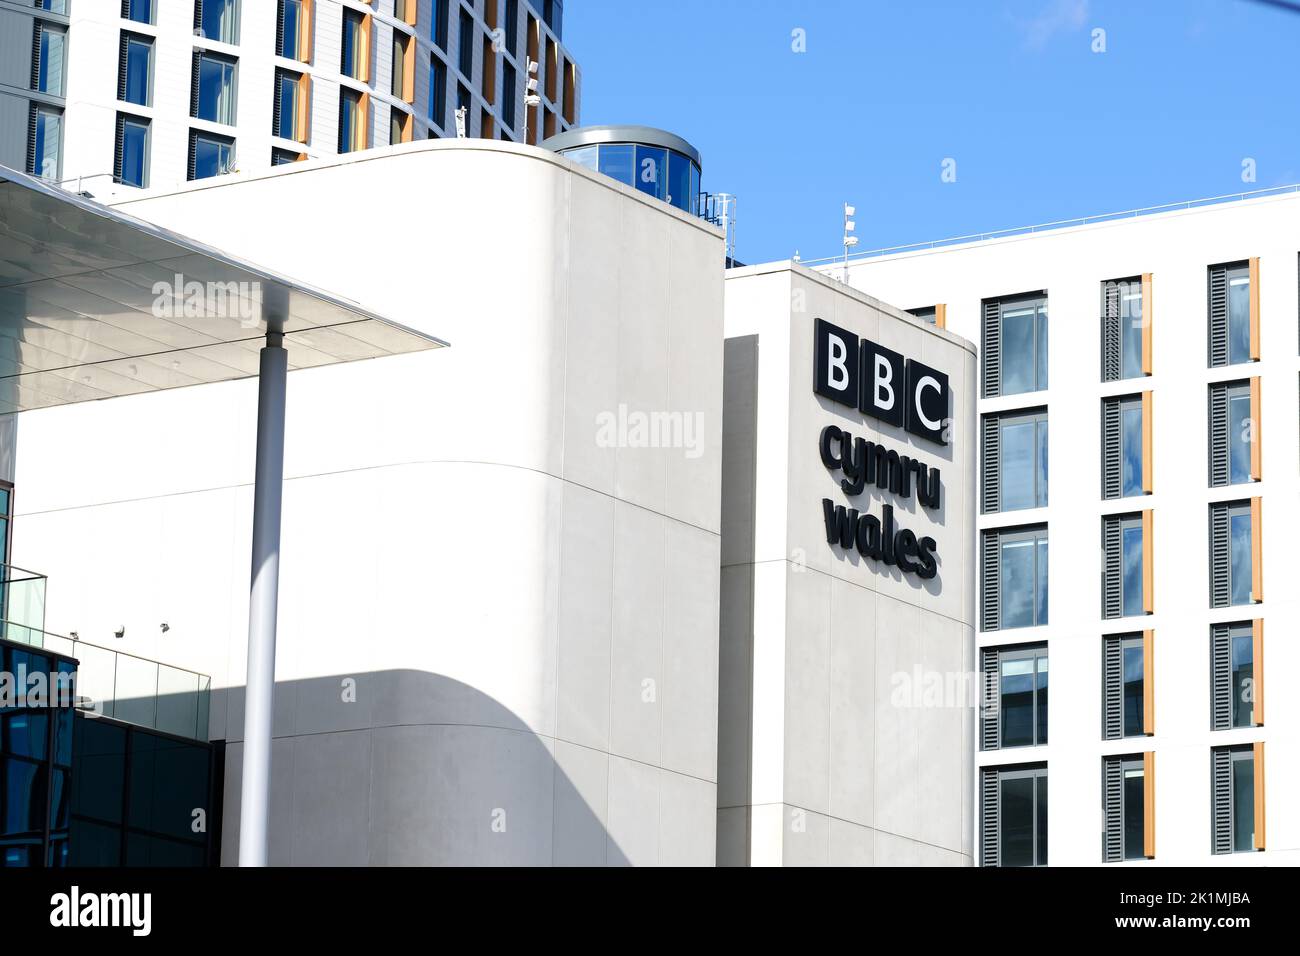 Cardiff Wales - il nuovo quartier generale della BBC Cymru Wales (radio e TV) nel centro di Cardiff visto nel 2022 Foto Stock